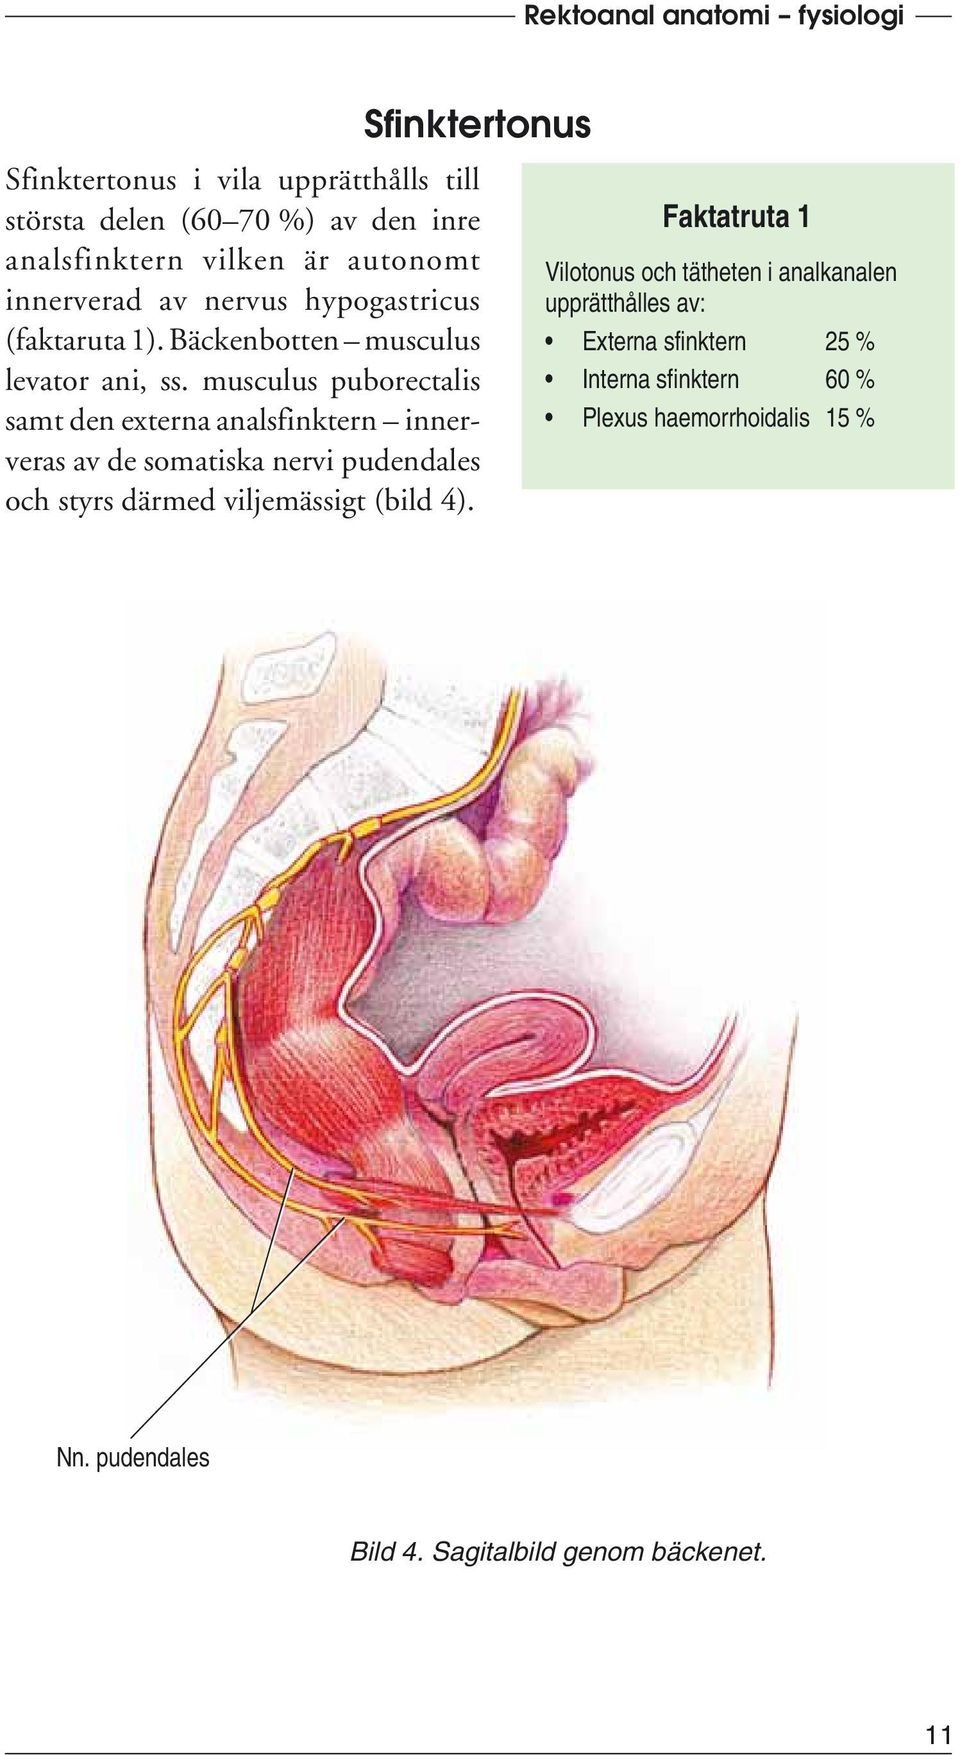 musculus puborectalis samt den externa analsfinktern innerveras av de somatiska nervi pudendales och styrs därmed viljemässigt (bild 4).